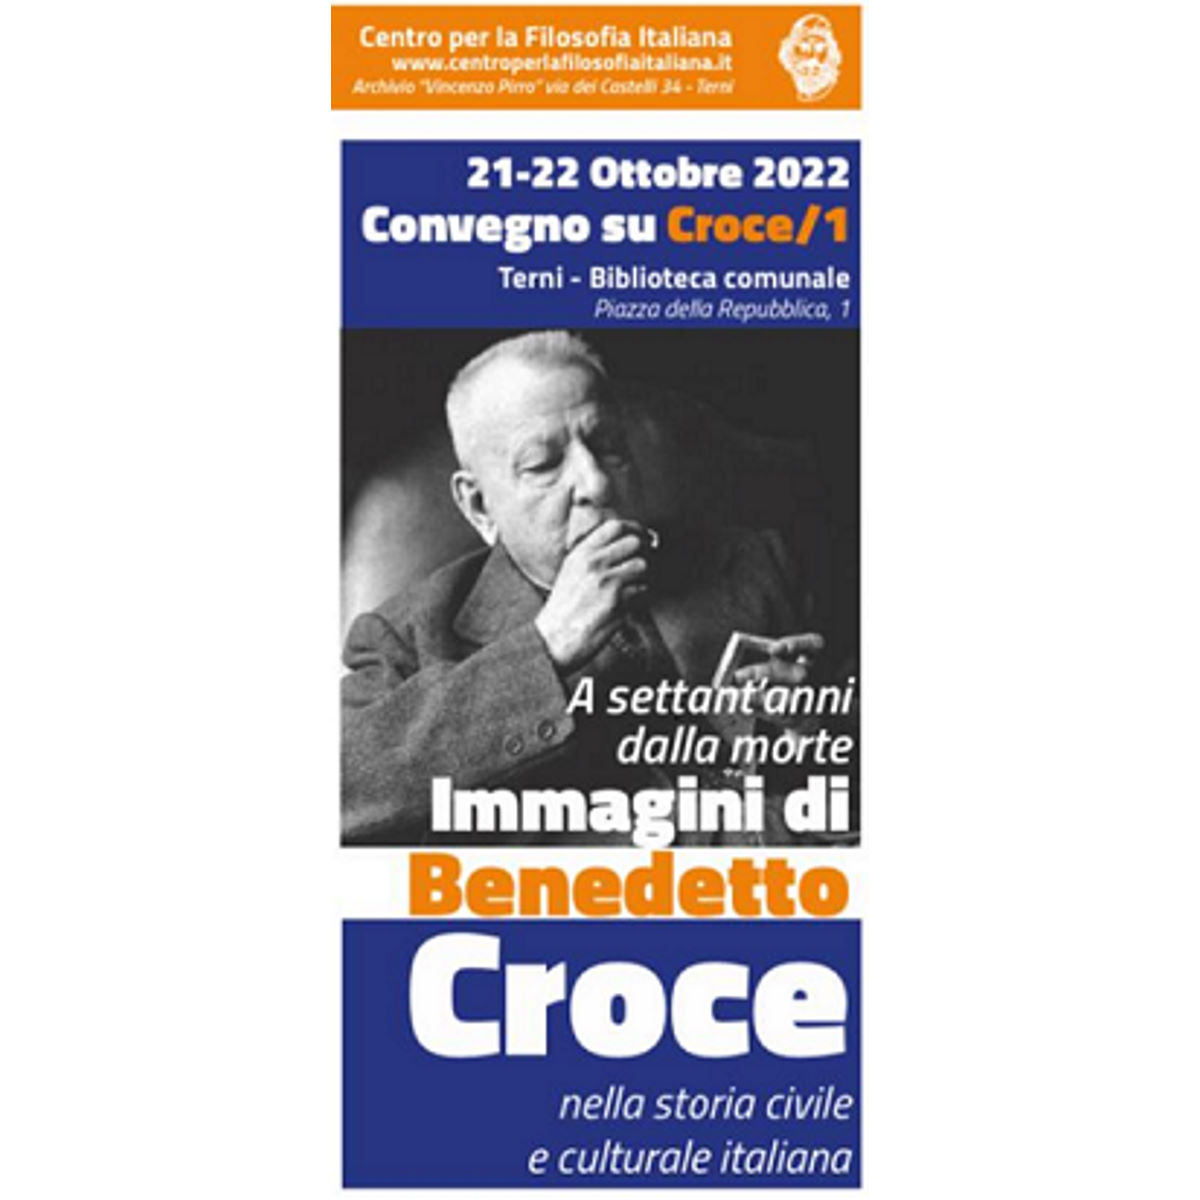 Convegni su Croce organizzati dal Centro per la Filosofia Italiana